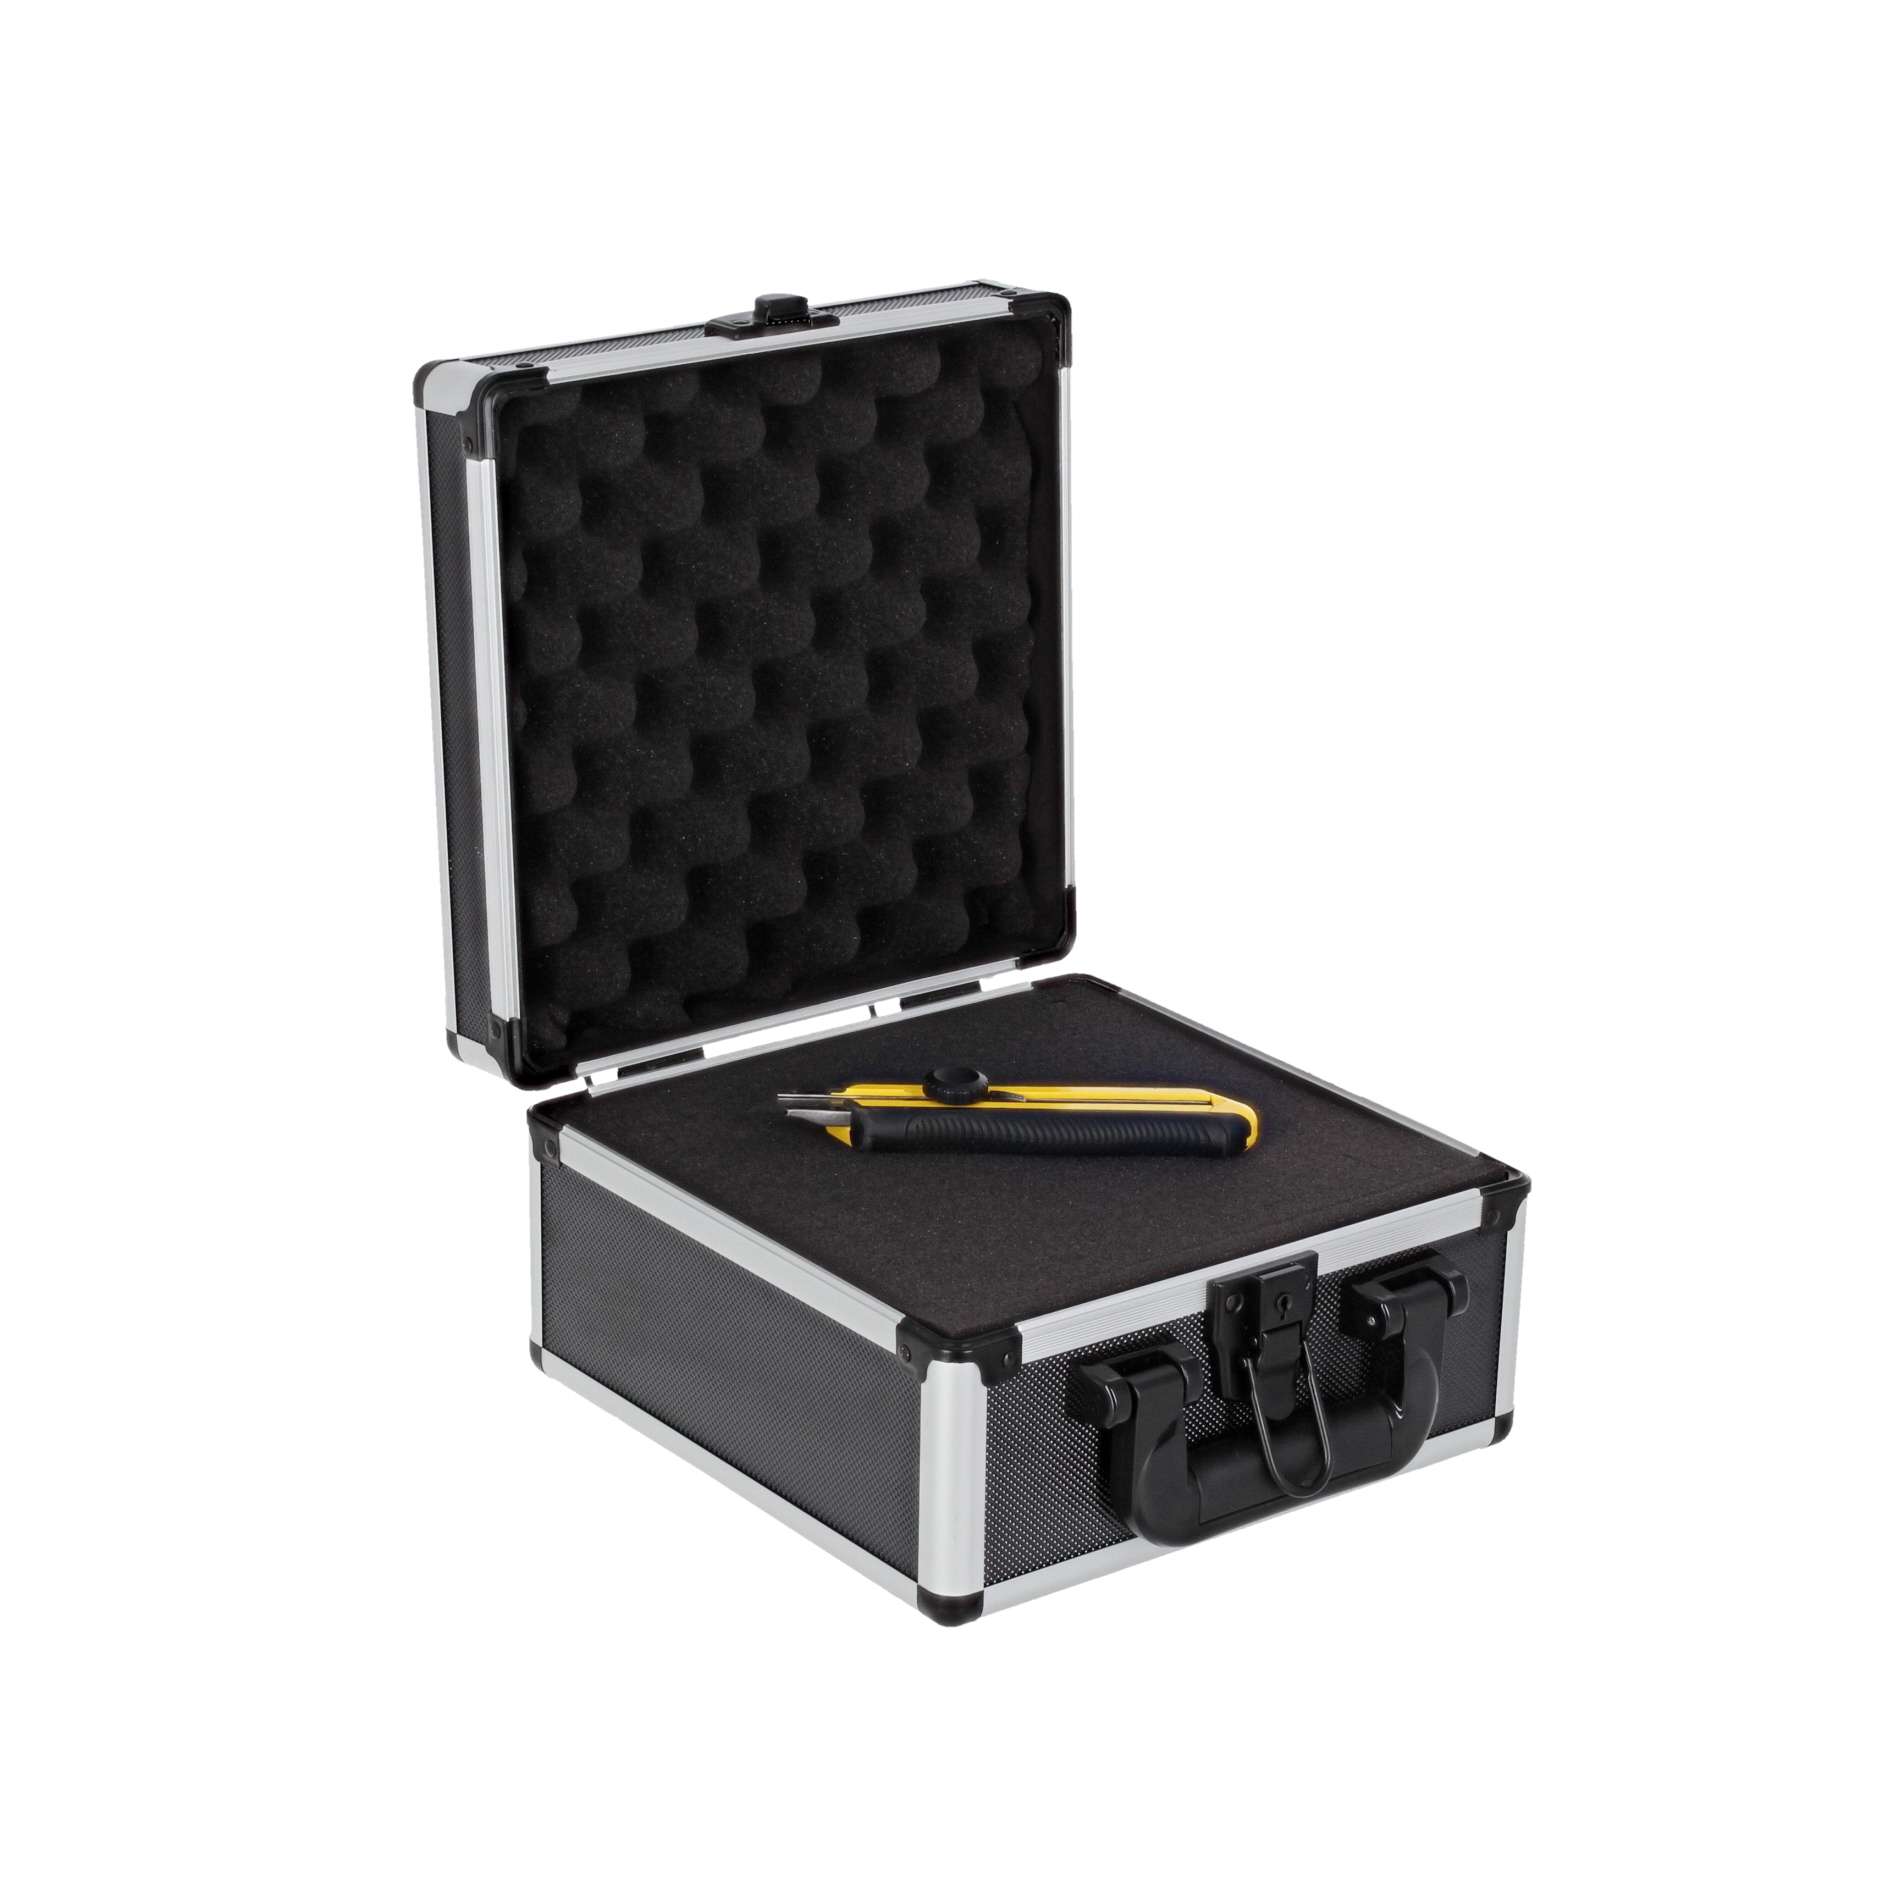 Power Acoustics Valise De Transport Pour Mixeur - Cases for mixing desk - Variation 4